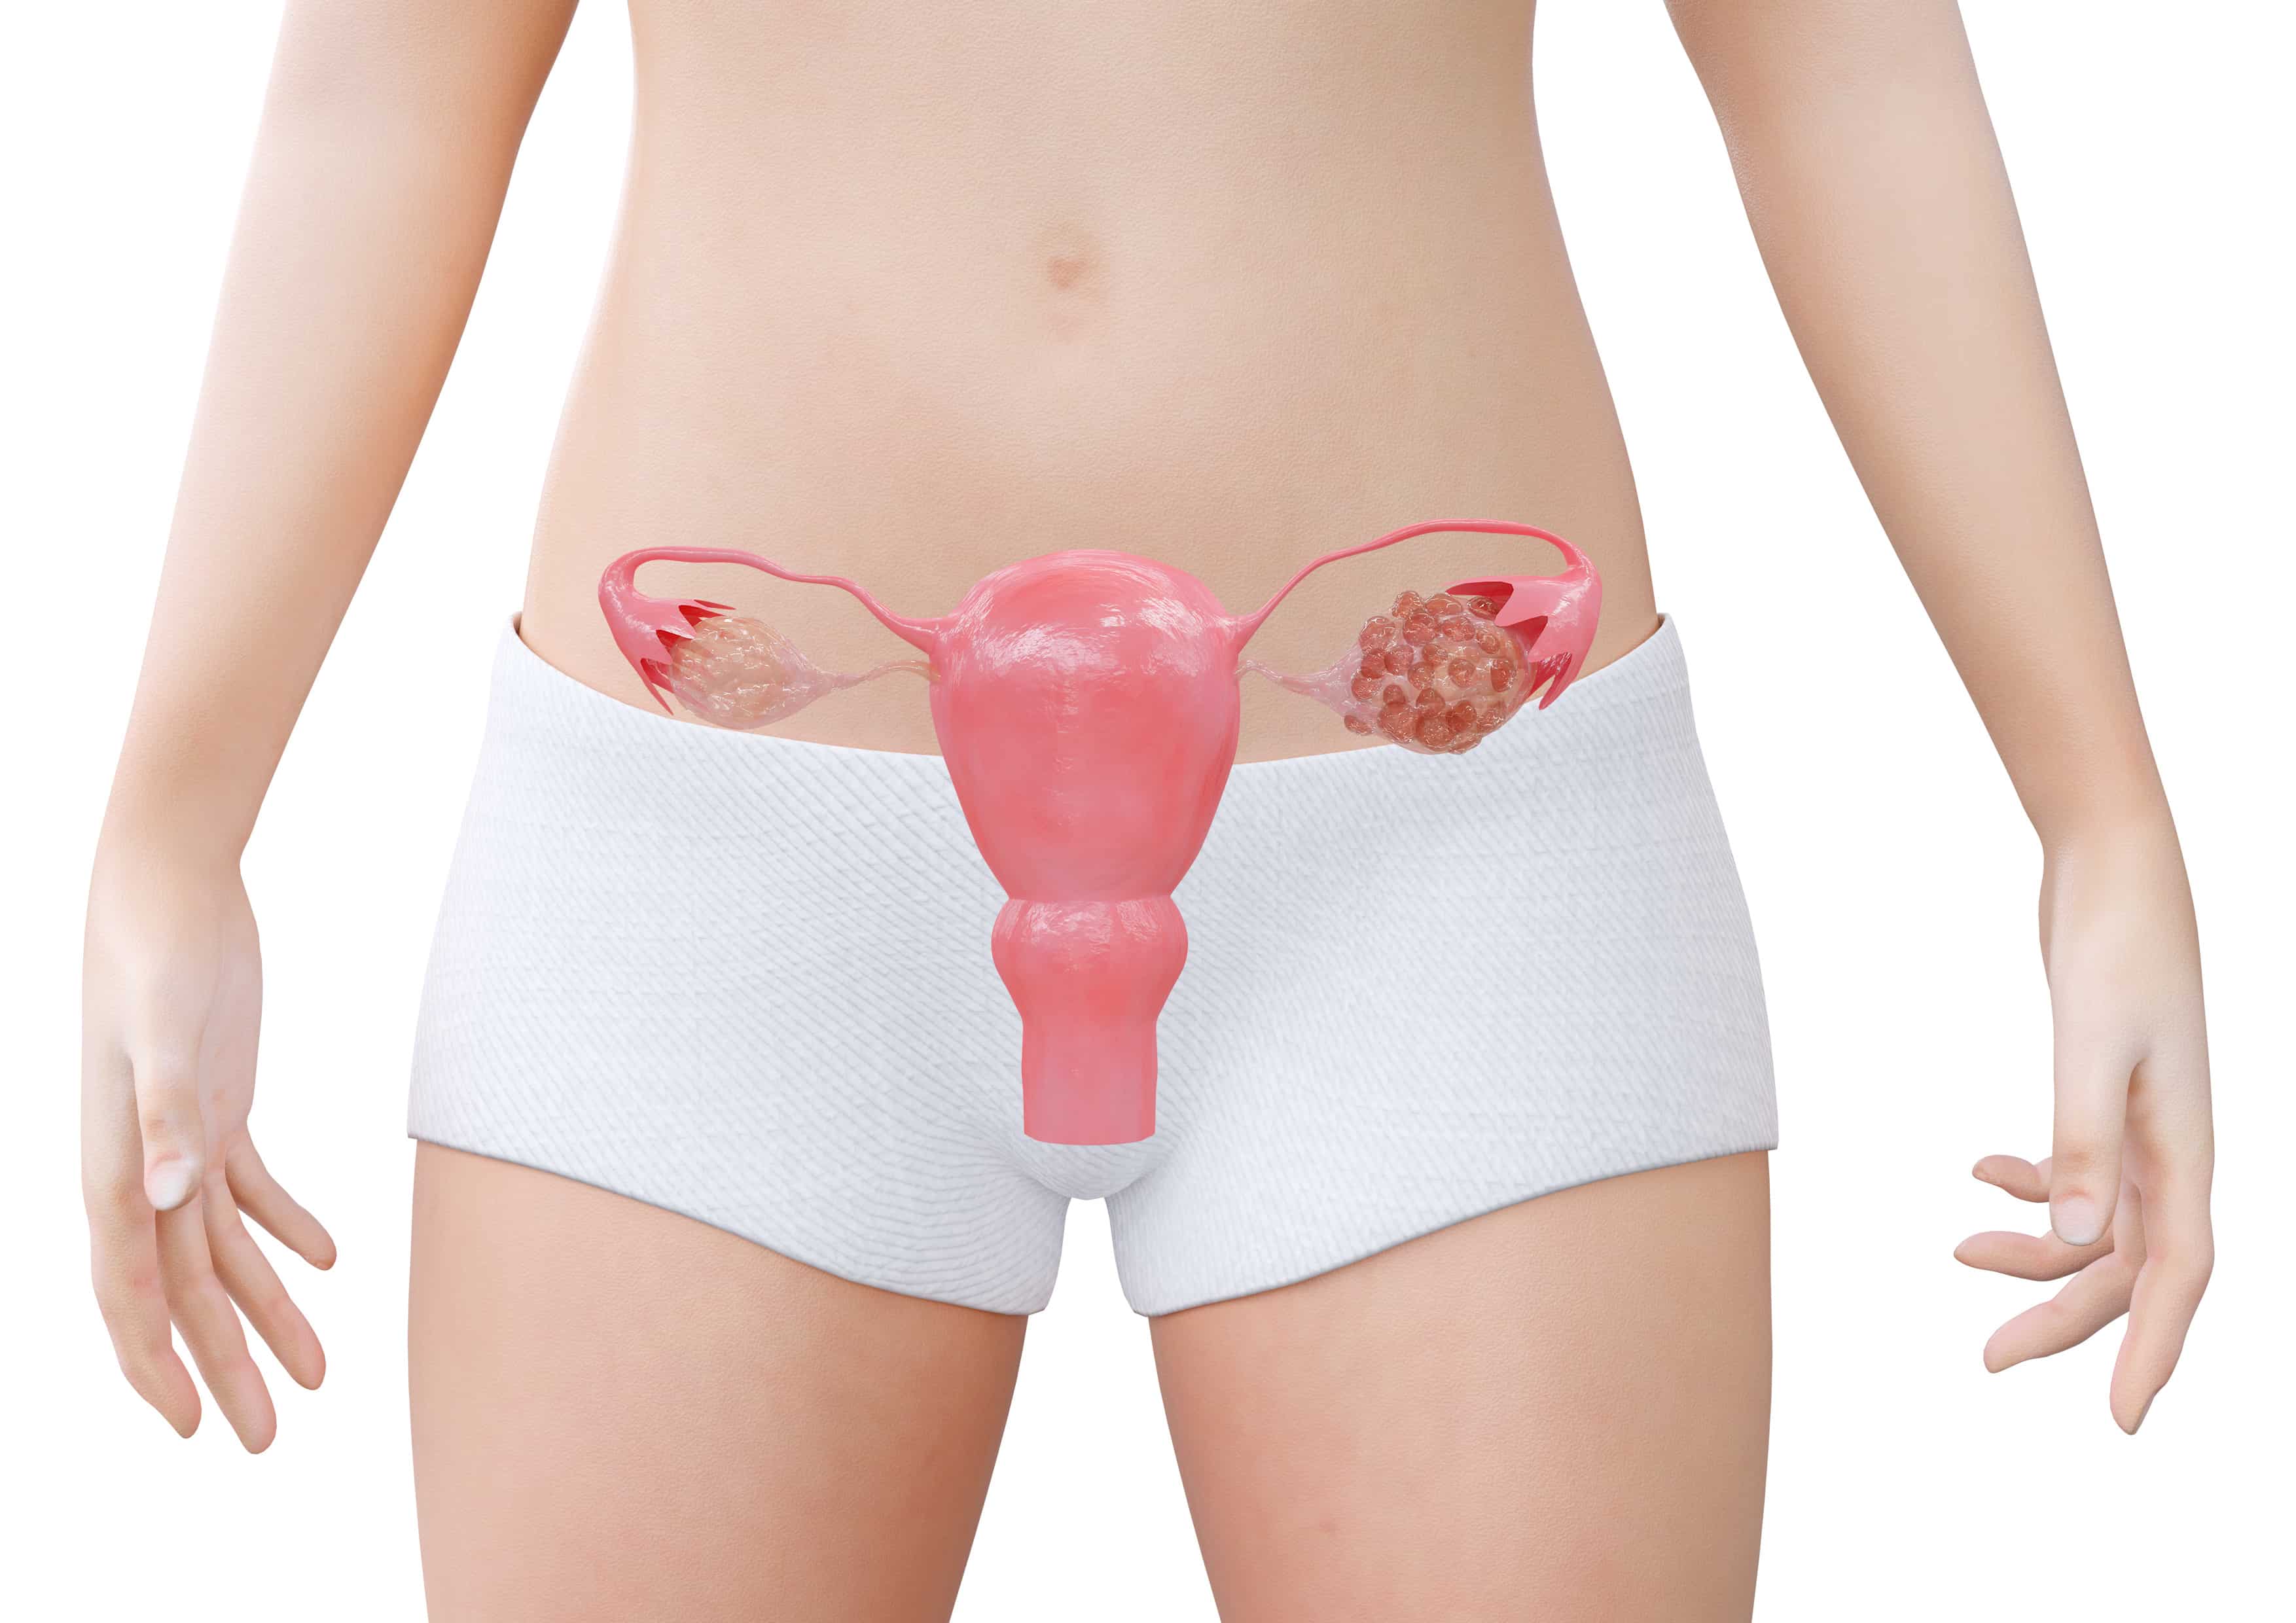 Menstruação Desregulada na Adolescência, é normal? 